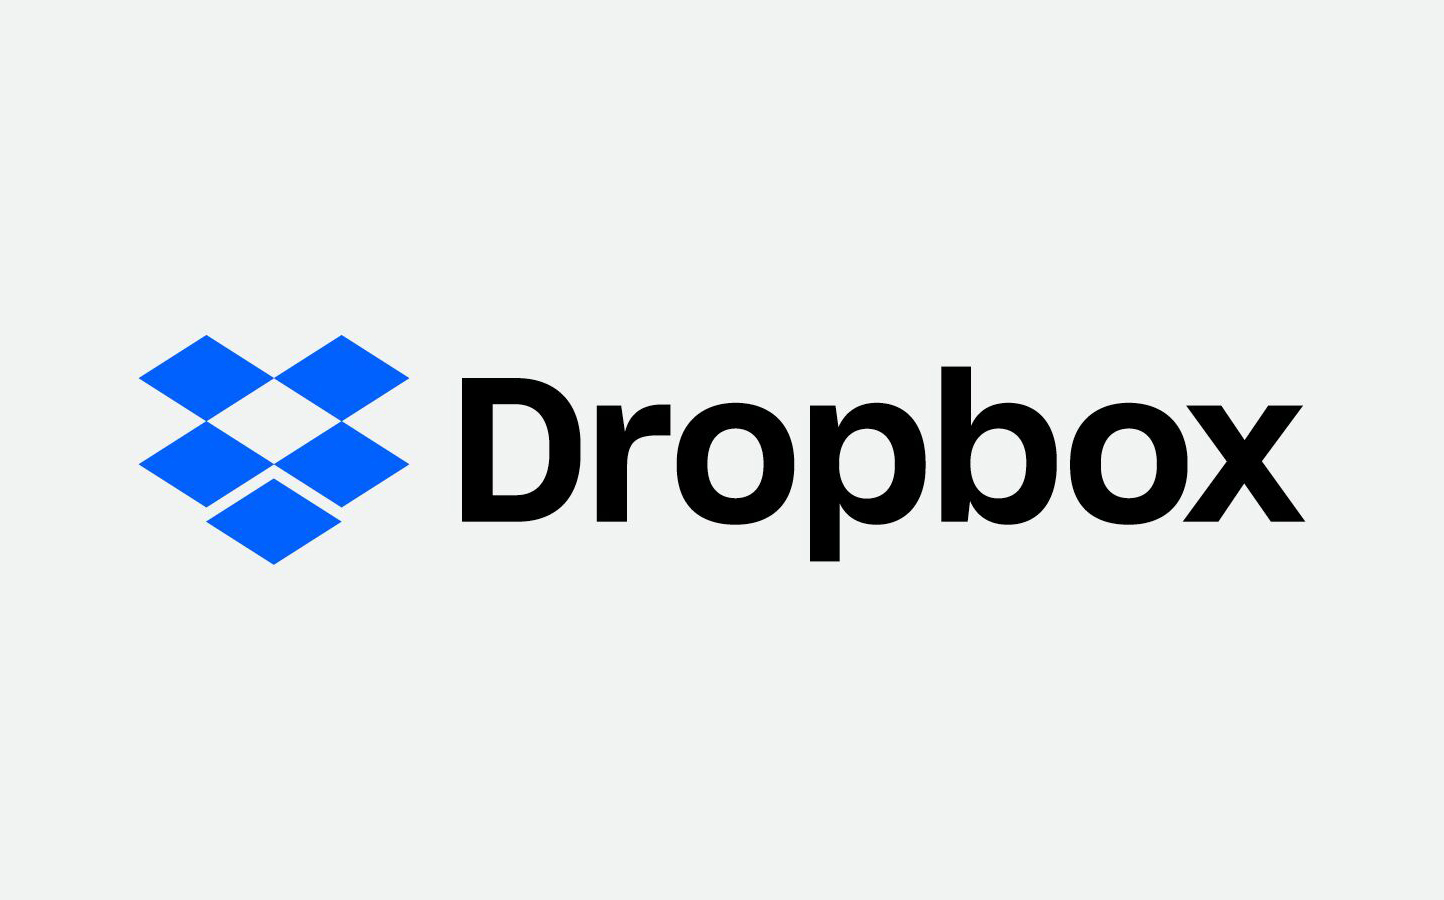 dropbox-dropbox公司员工收入情况